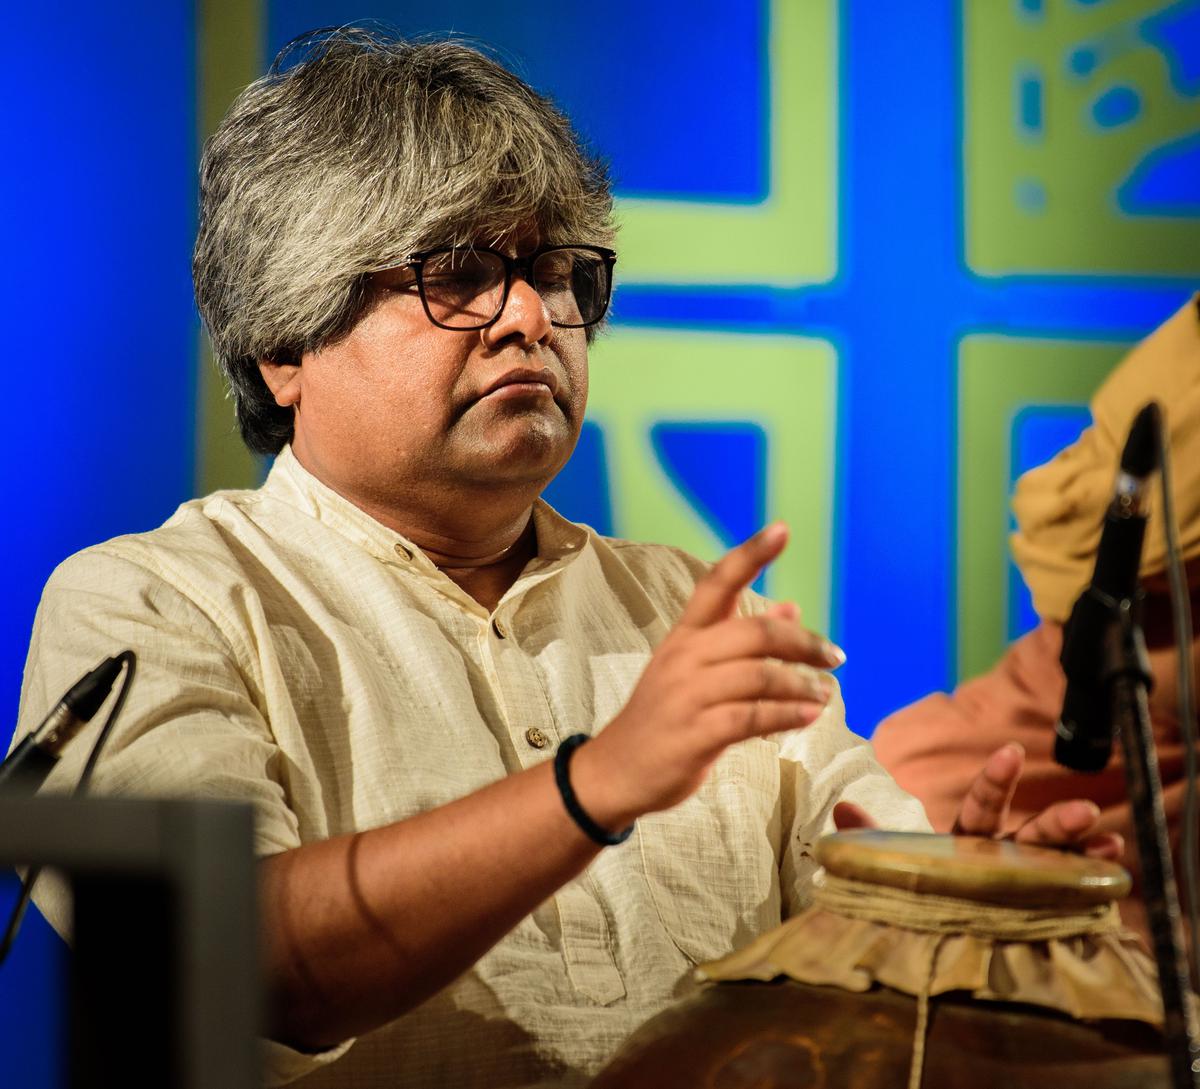 Kalamandalam Piyal Bhattacharya playing Dardur